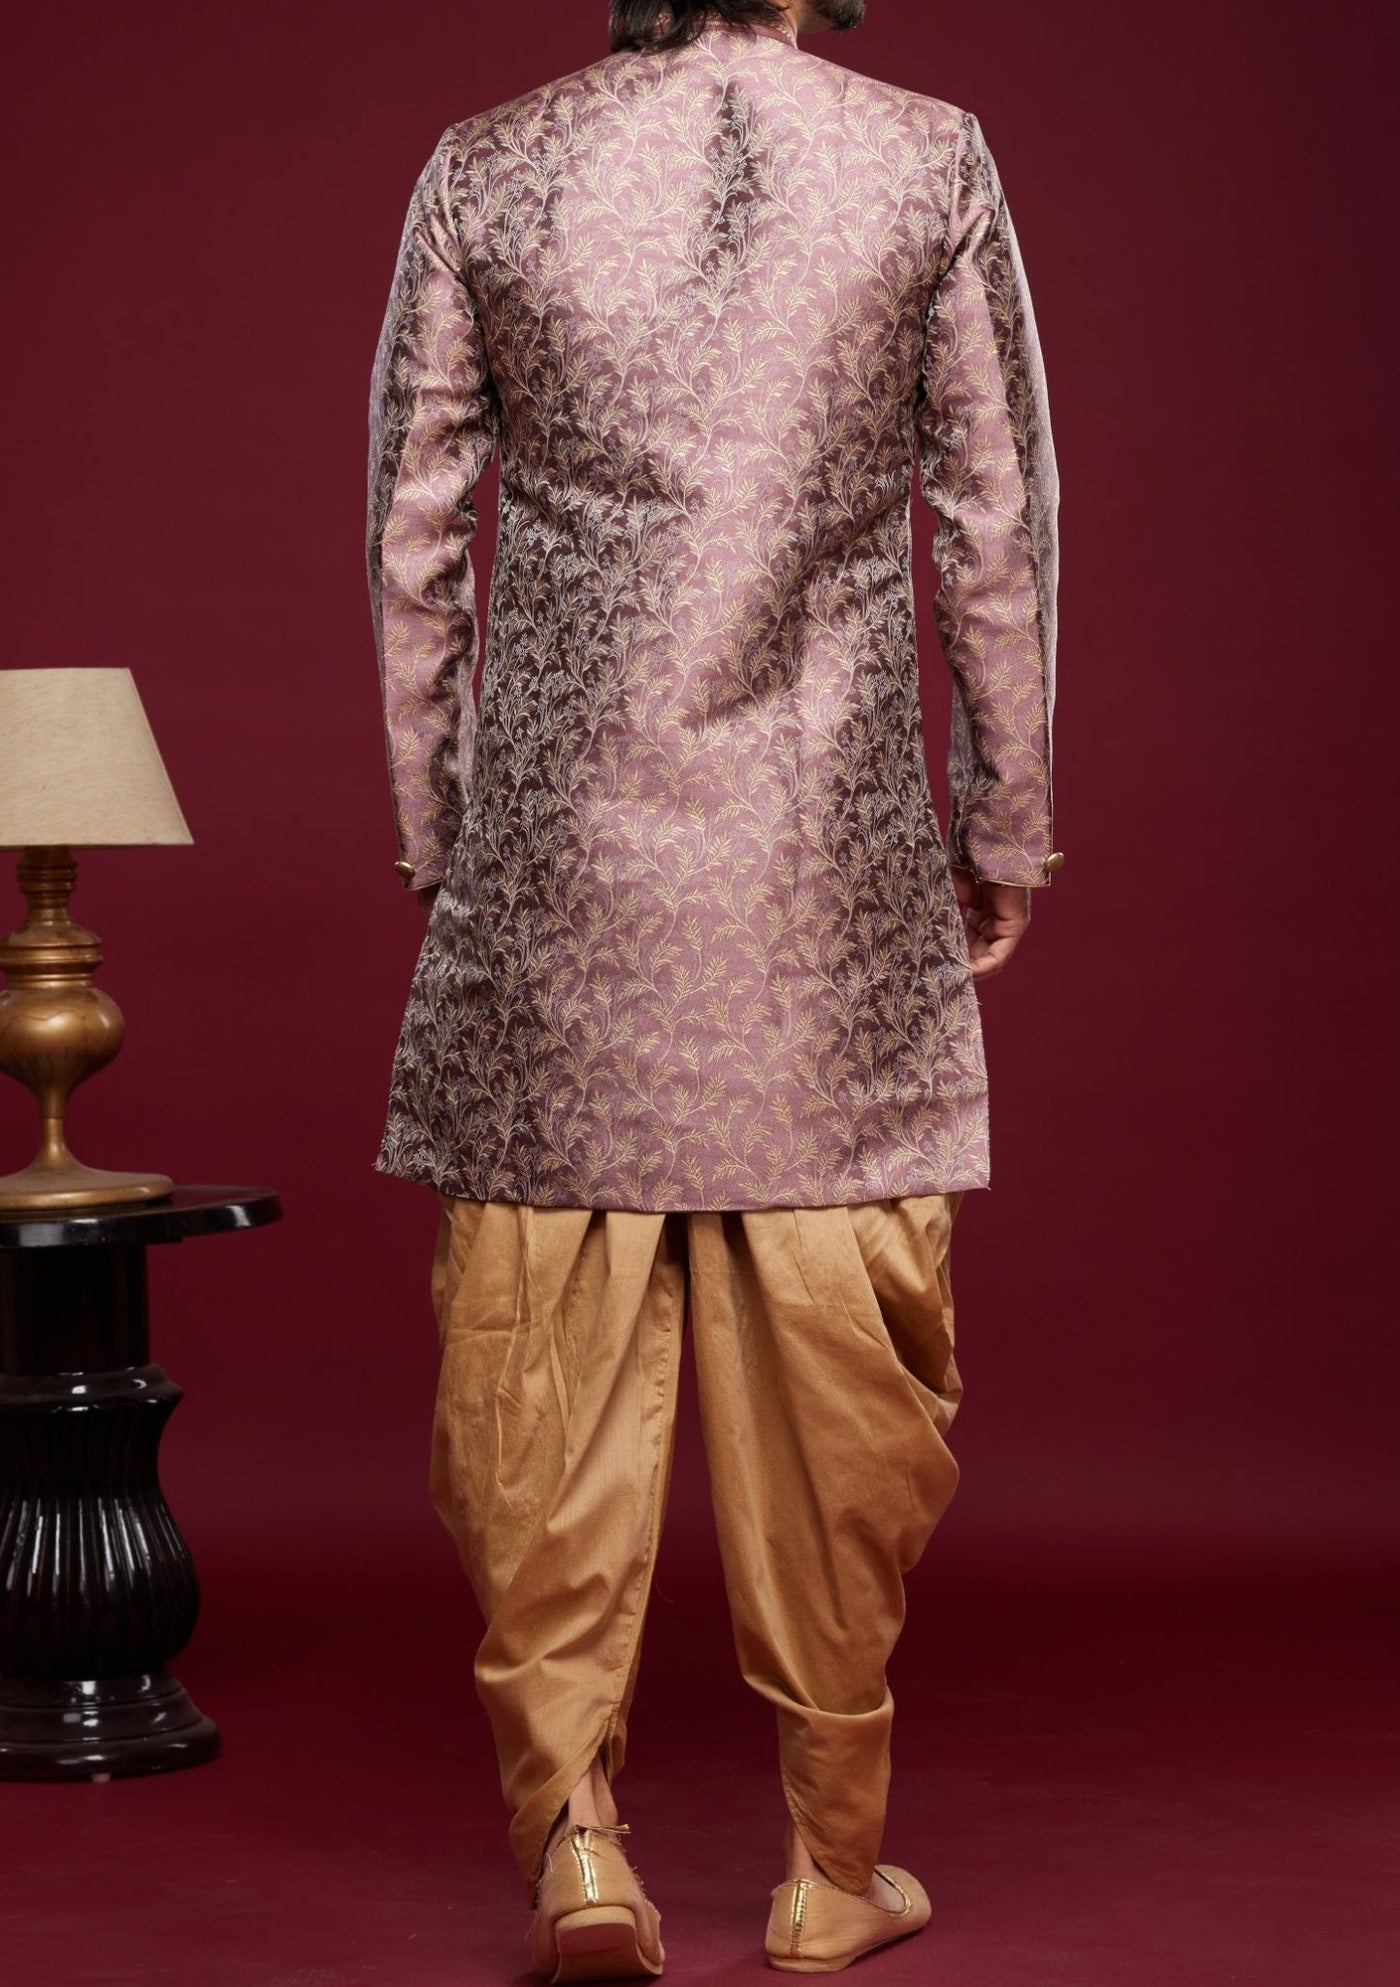 Men's Semi Indo Western Party Wear Sherwani Suit - db23843